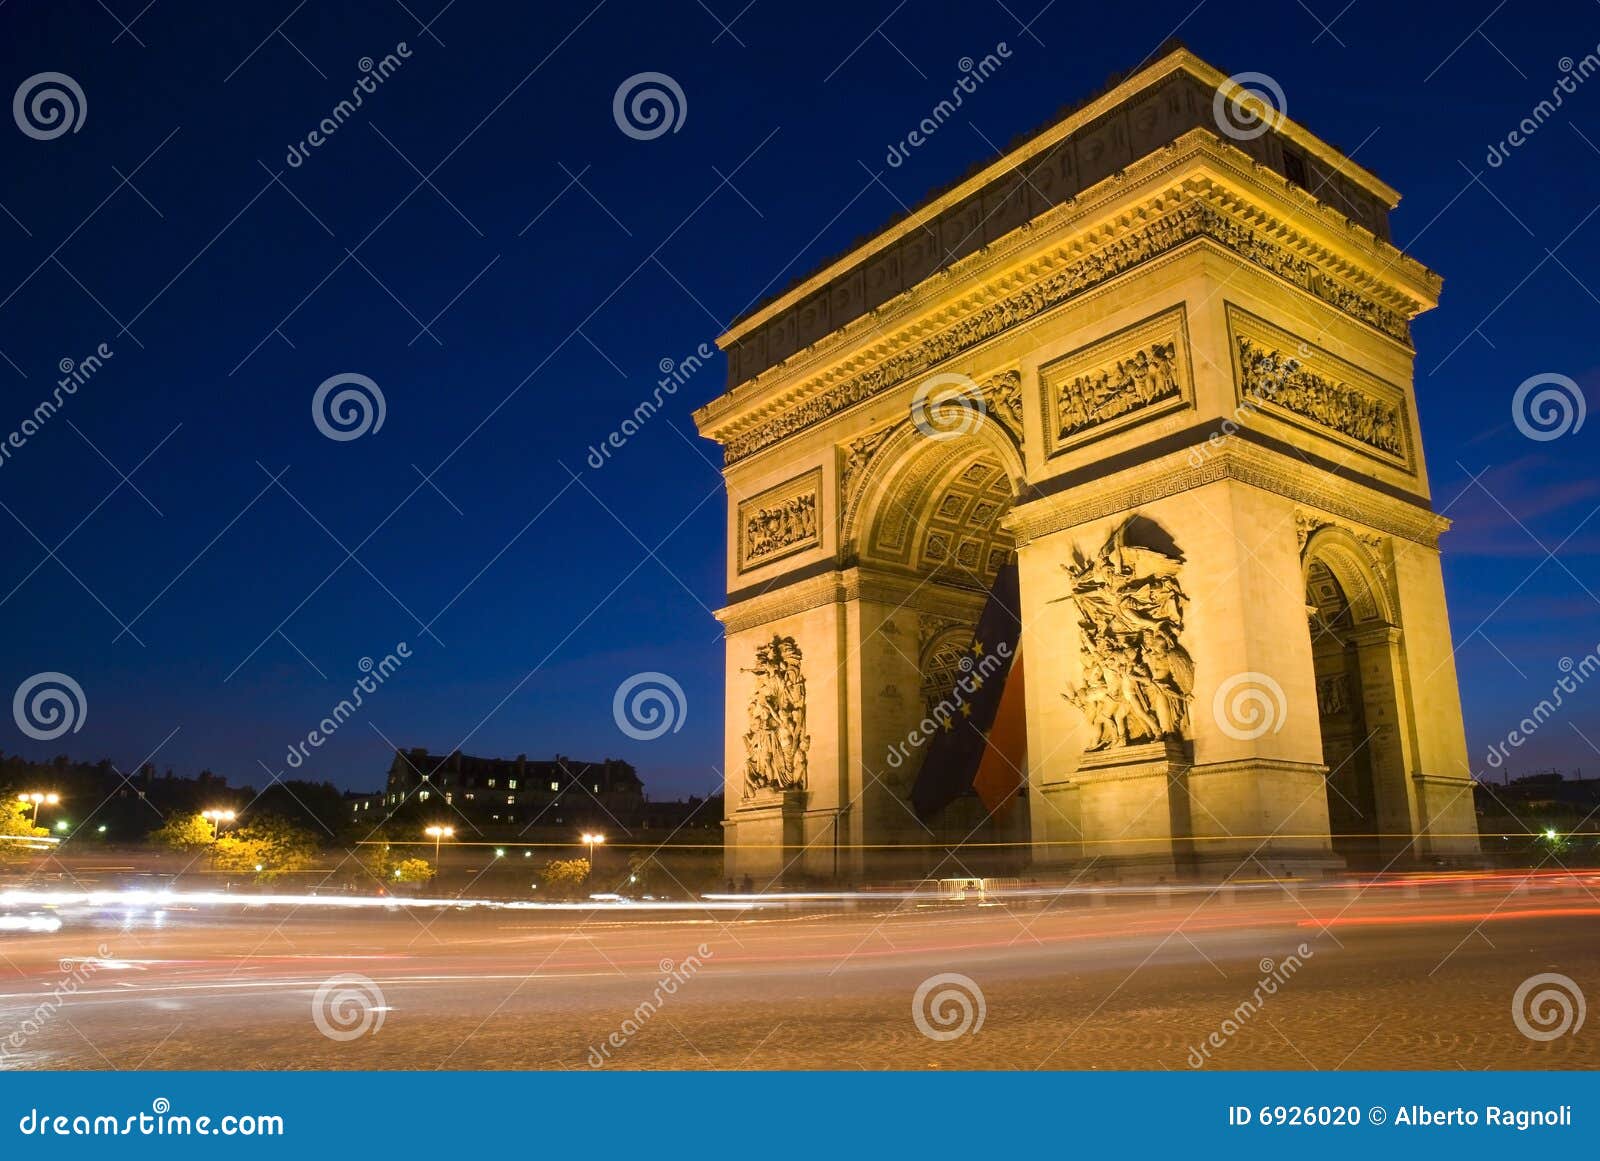 arc de triomphe at night, paris, france